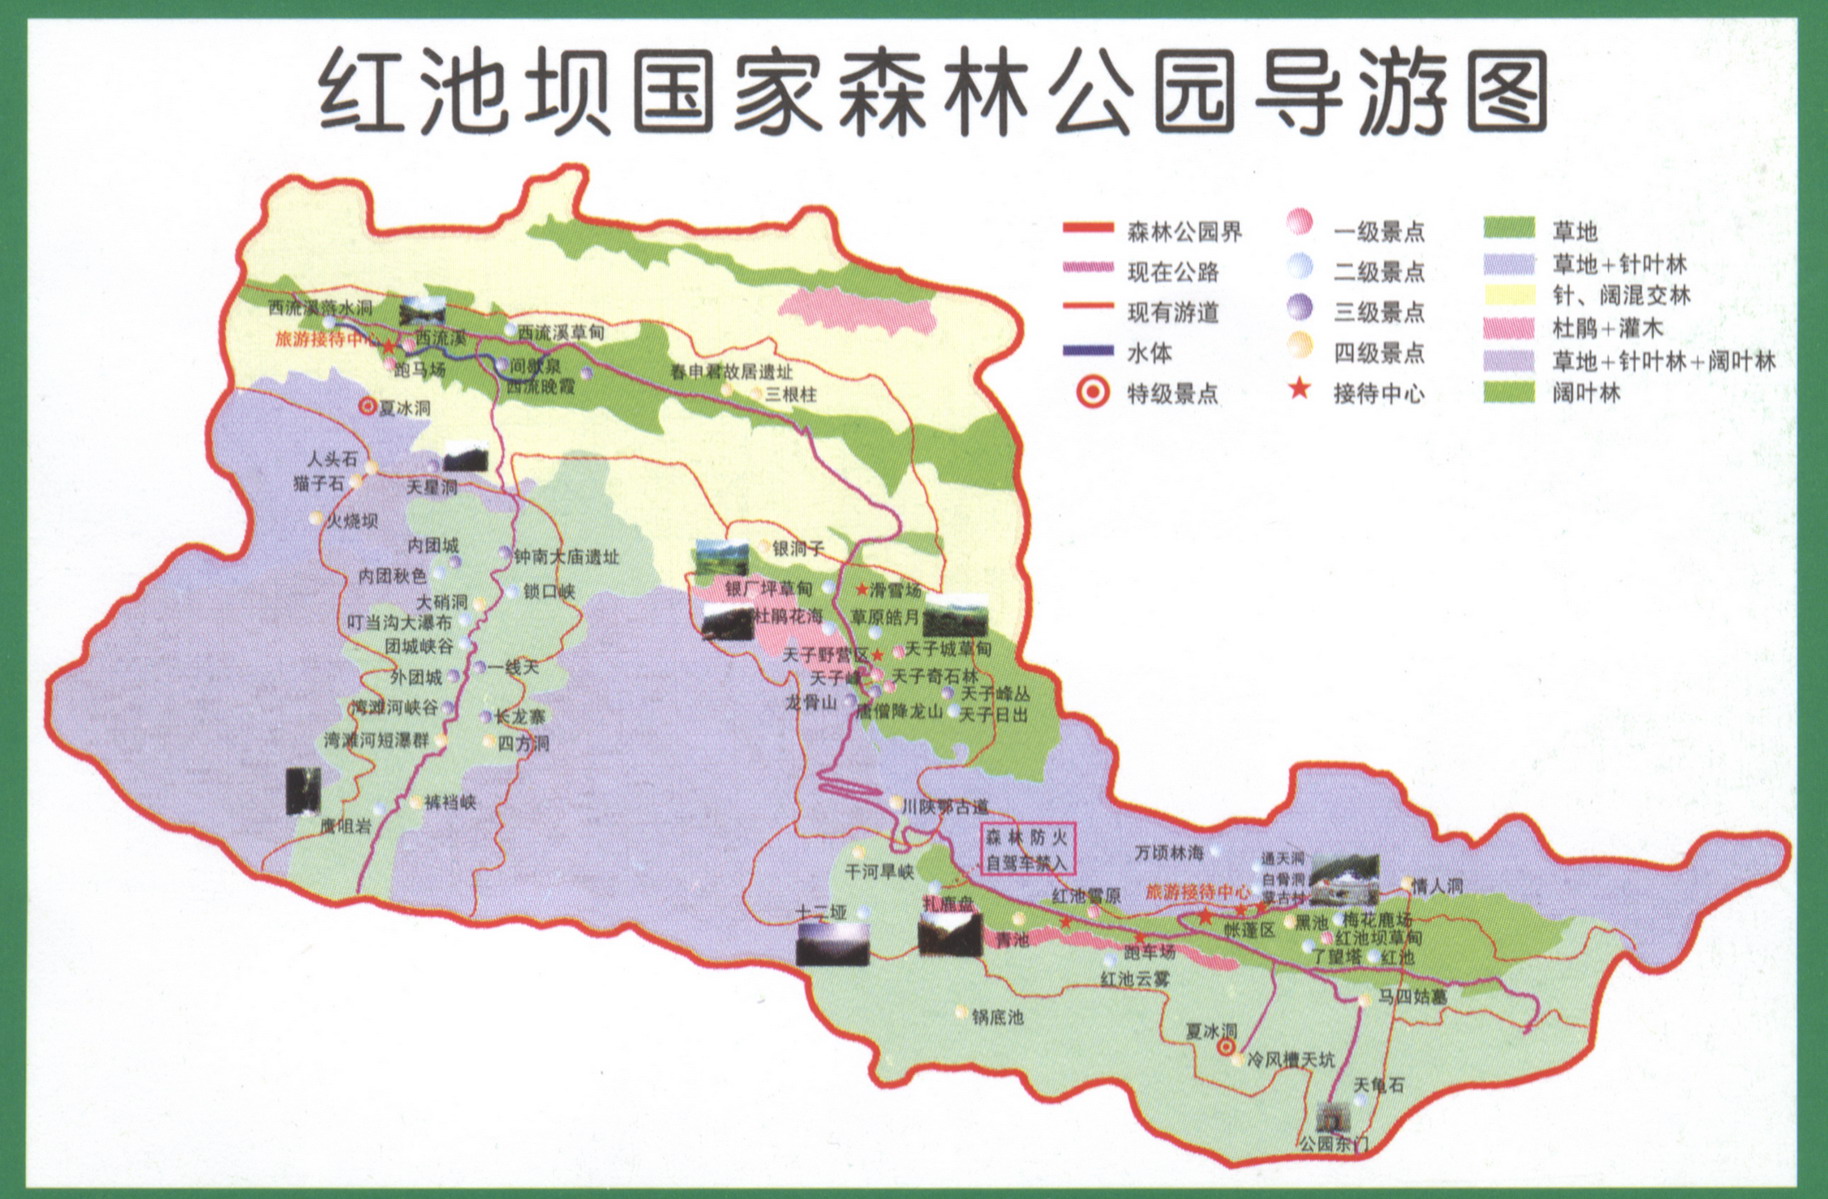 红池坝风景区地图图片